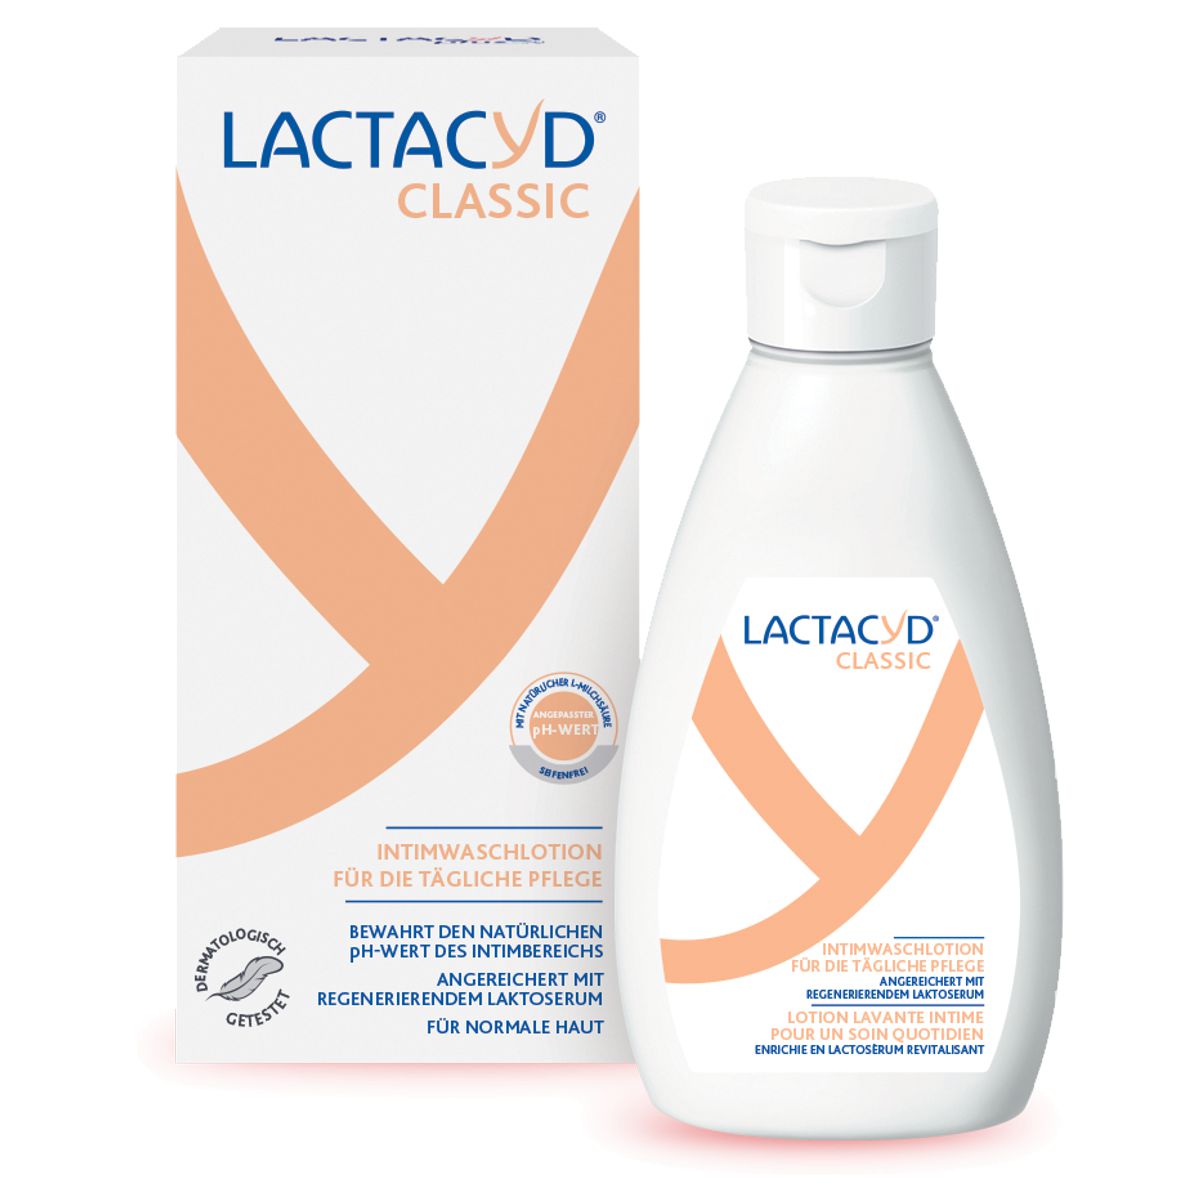 Lactacyd_Intimwaschlotion_online_kaufen